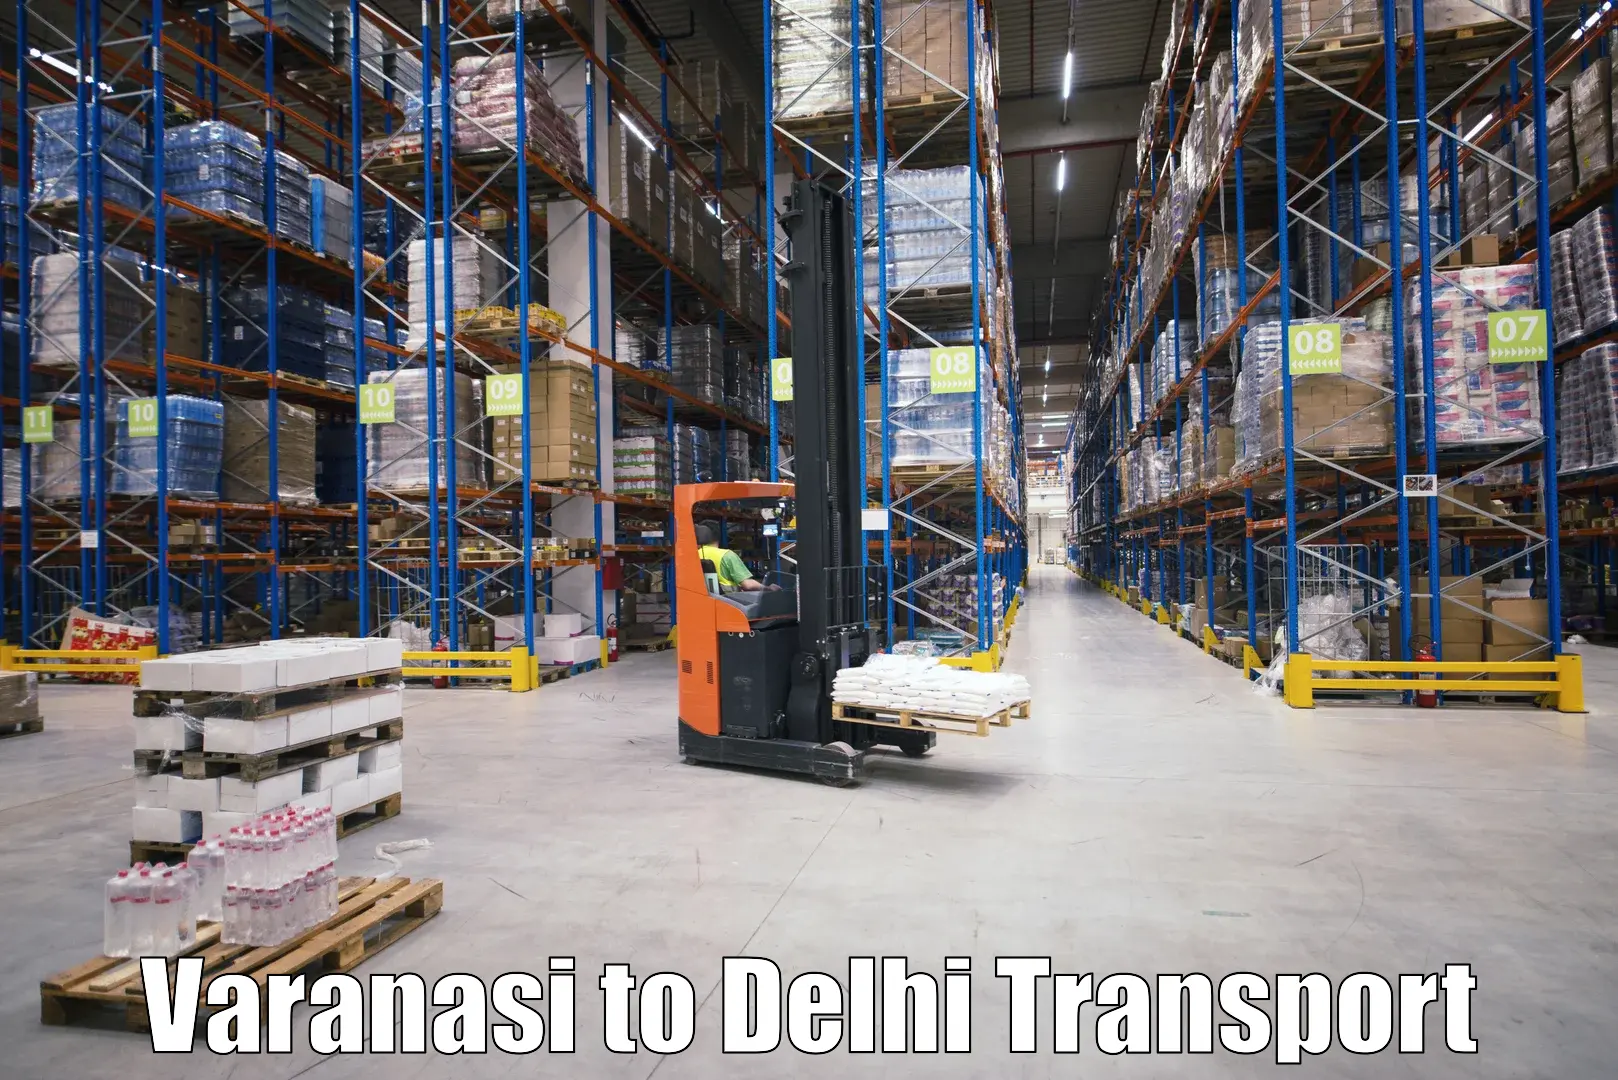 Cargo train transport services Varanasi to Jhilmil